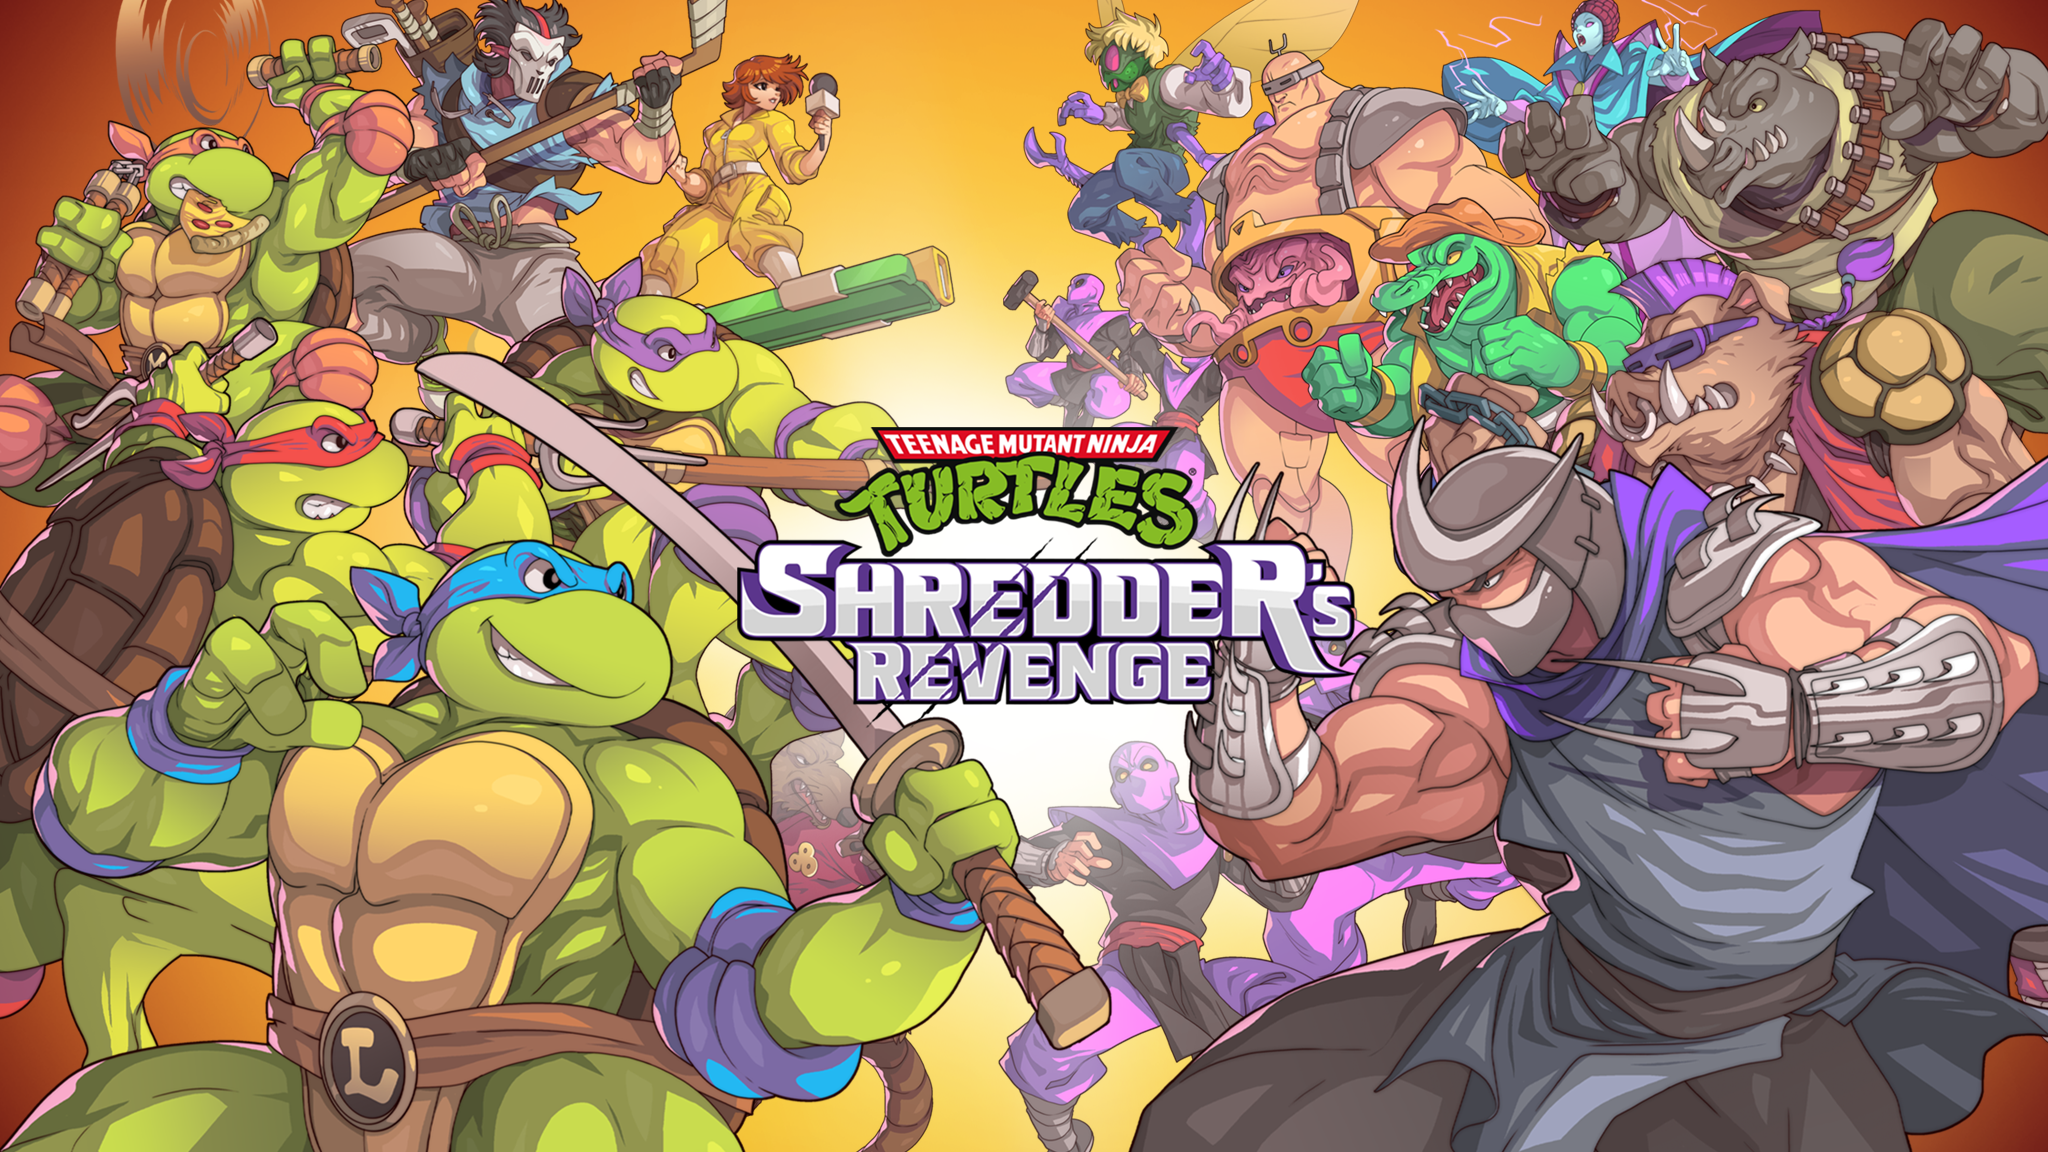 Turtles Shredder Revenge. TMNT Shredder s Revenge. TMNT Shredder Revenge. Игра Черепашки ниндзя месть Шредера. Tmnt revenge android